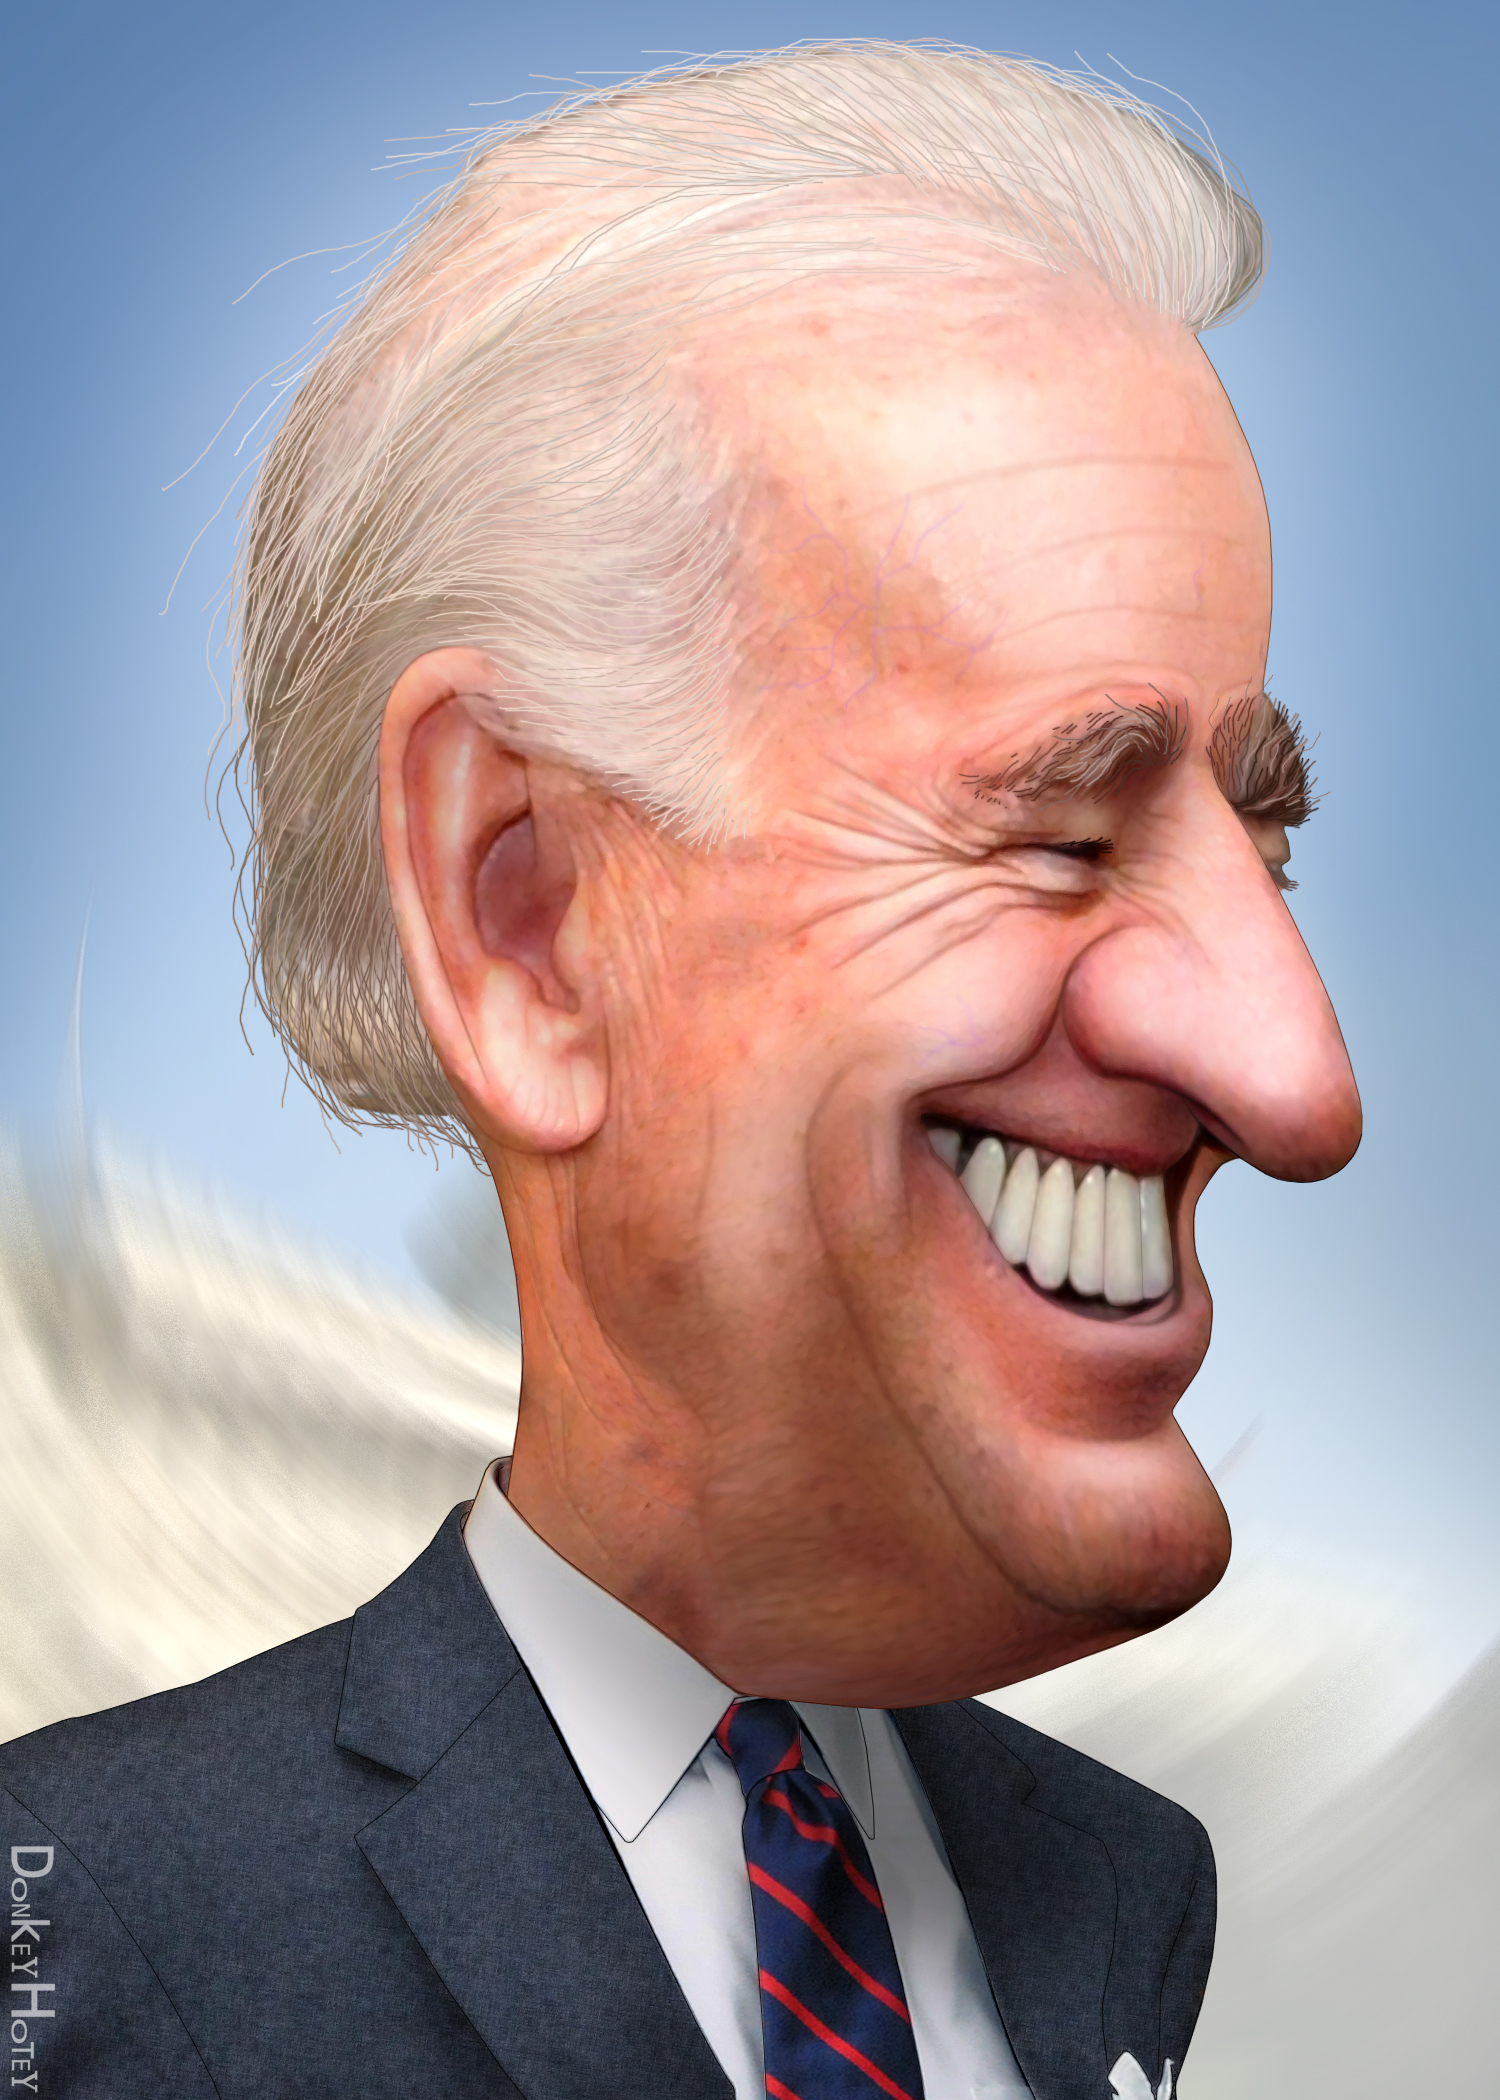 Joe_Biden_-_Caricature_%285598256902%29.jpg